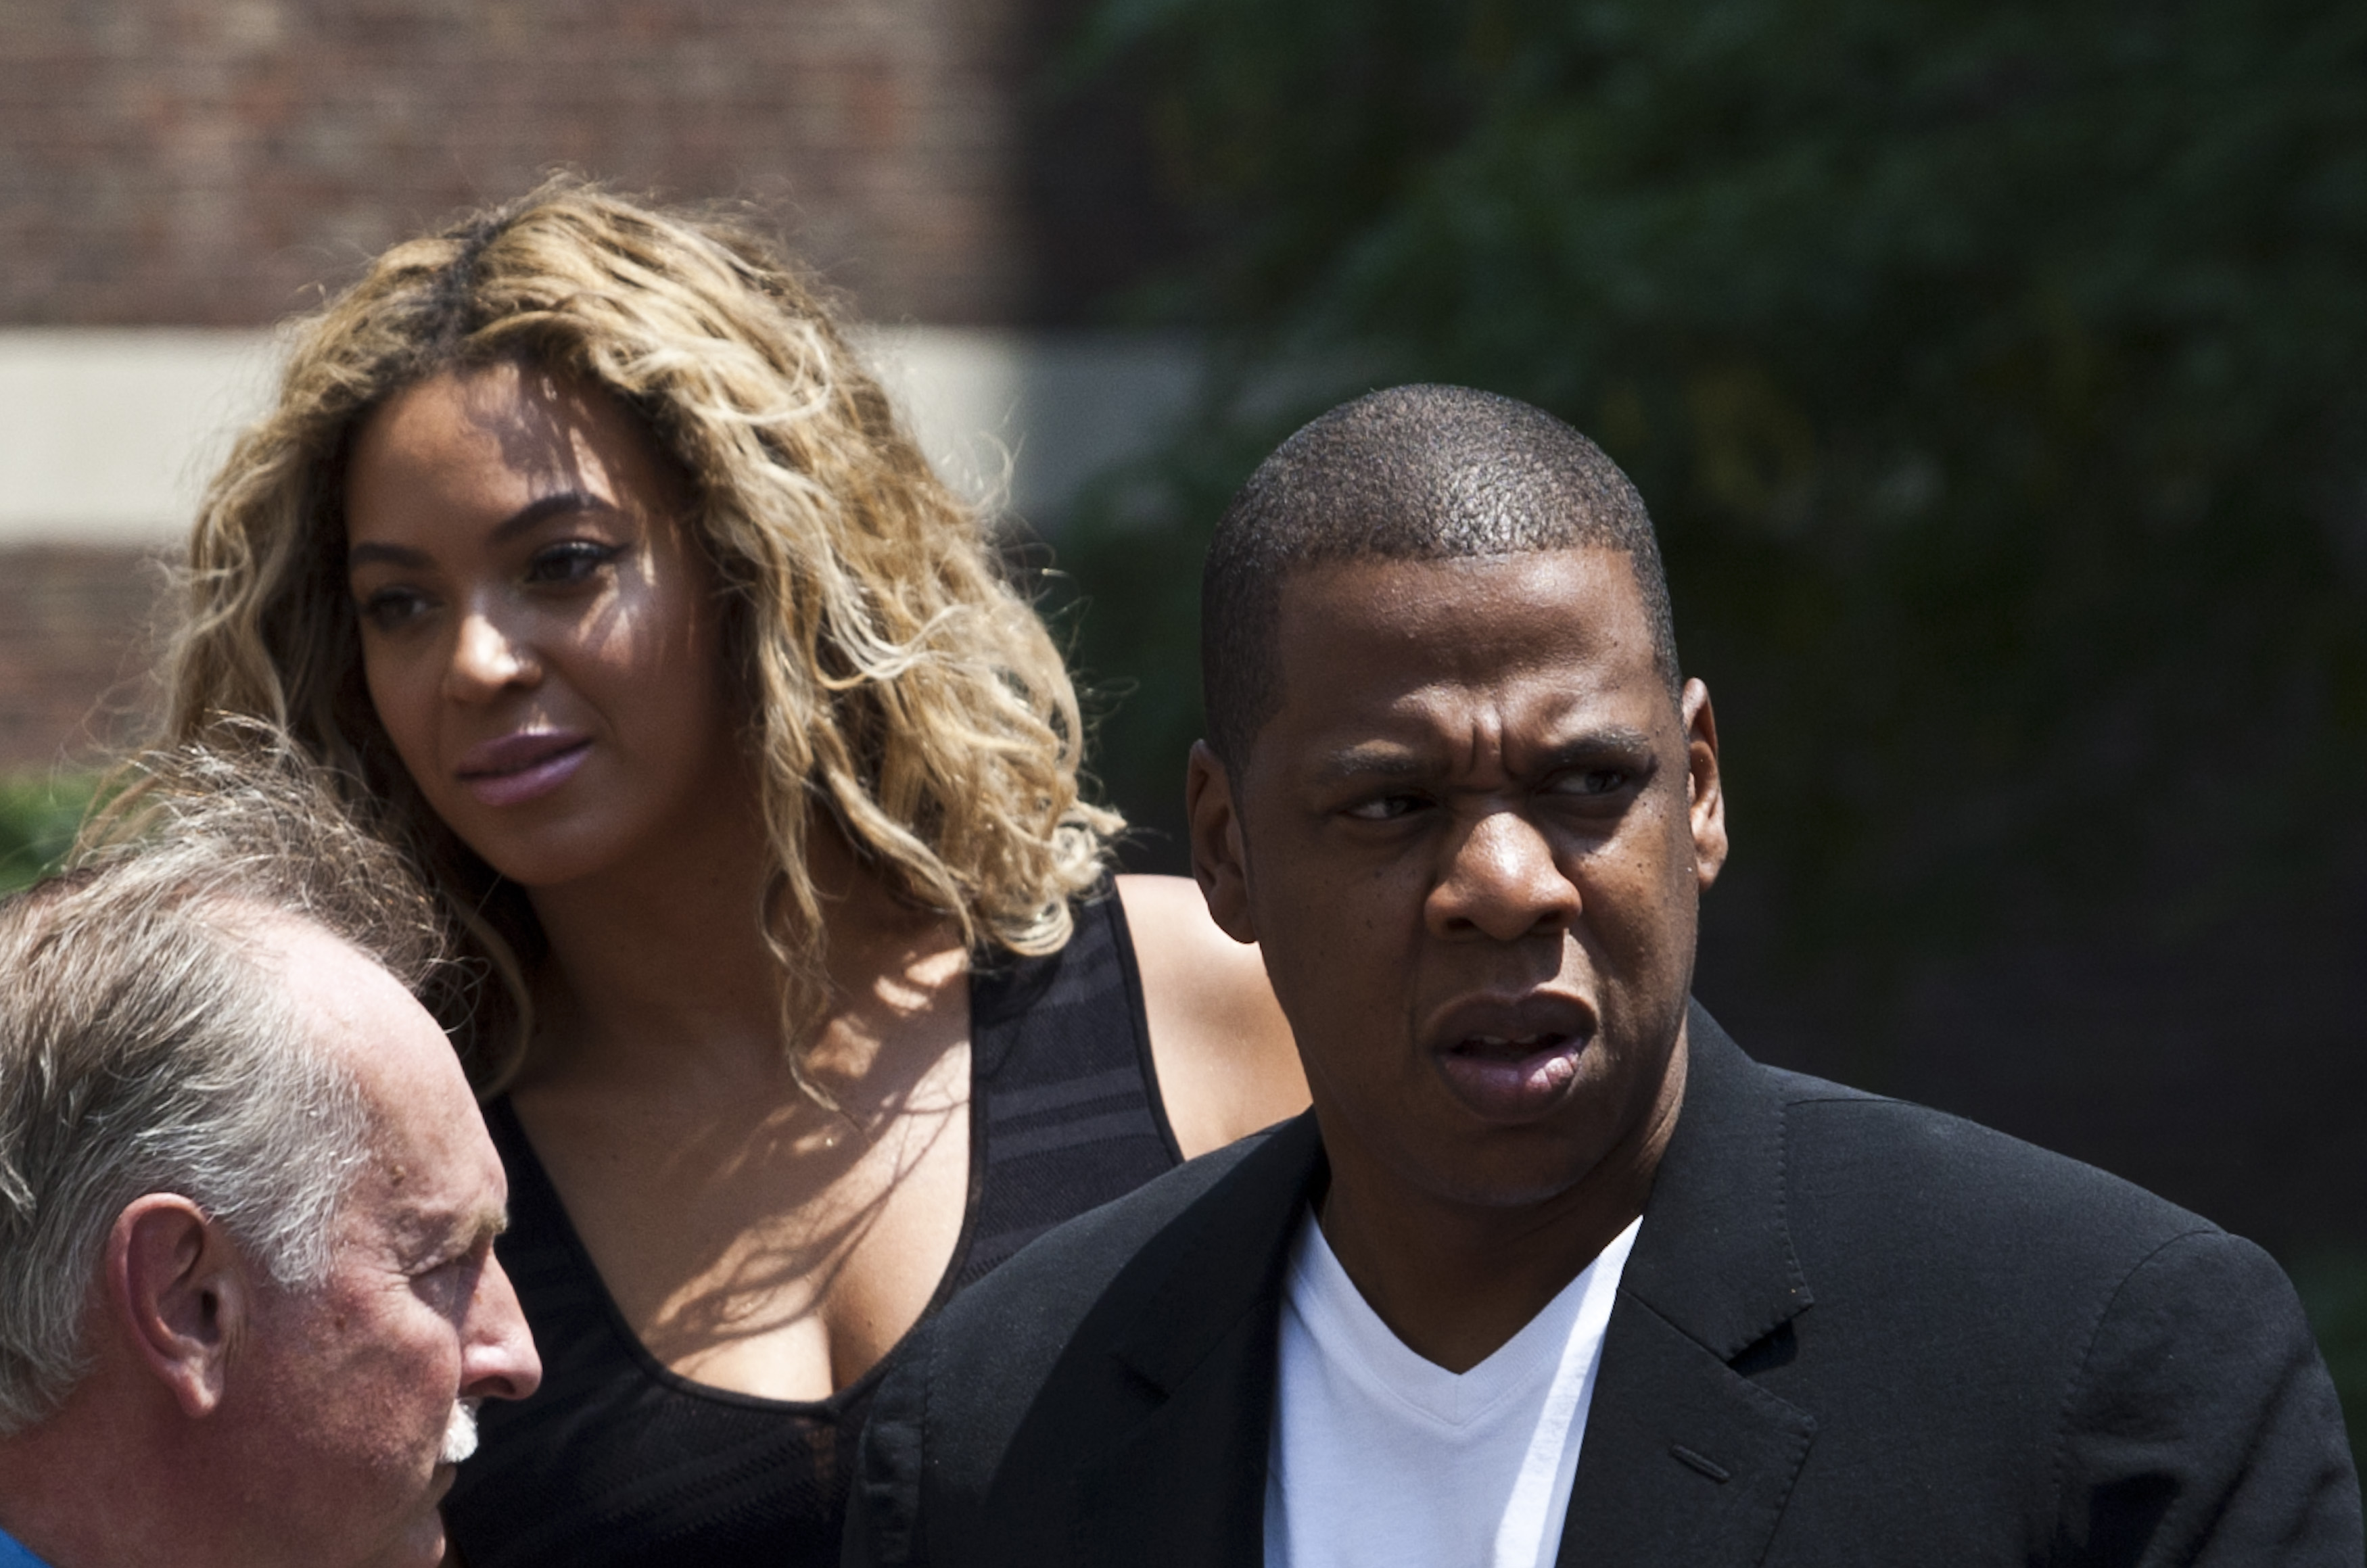 Man Gets Finger Bitten Off At Jay Z & Beyonce Concert